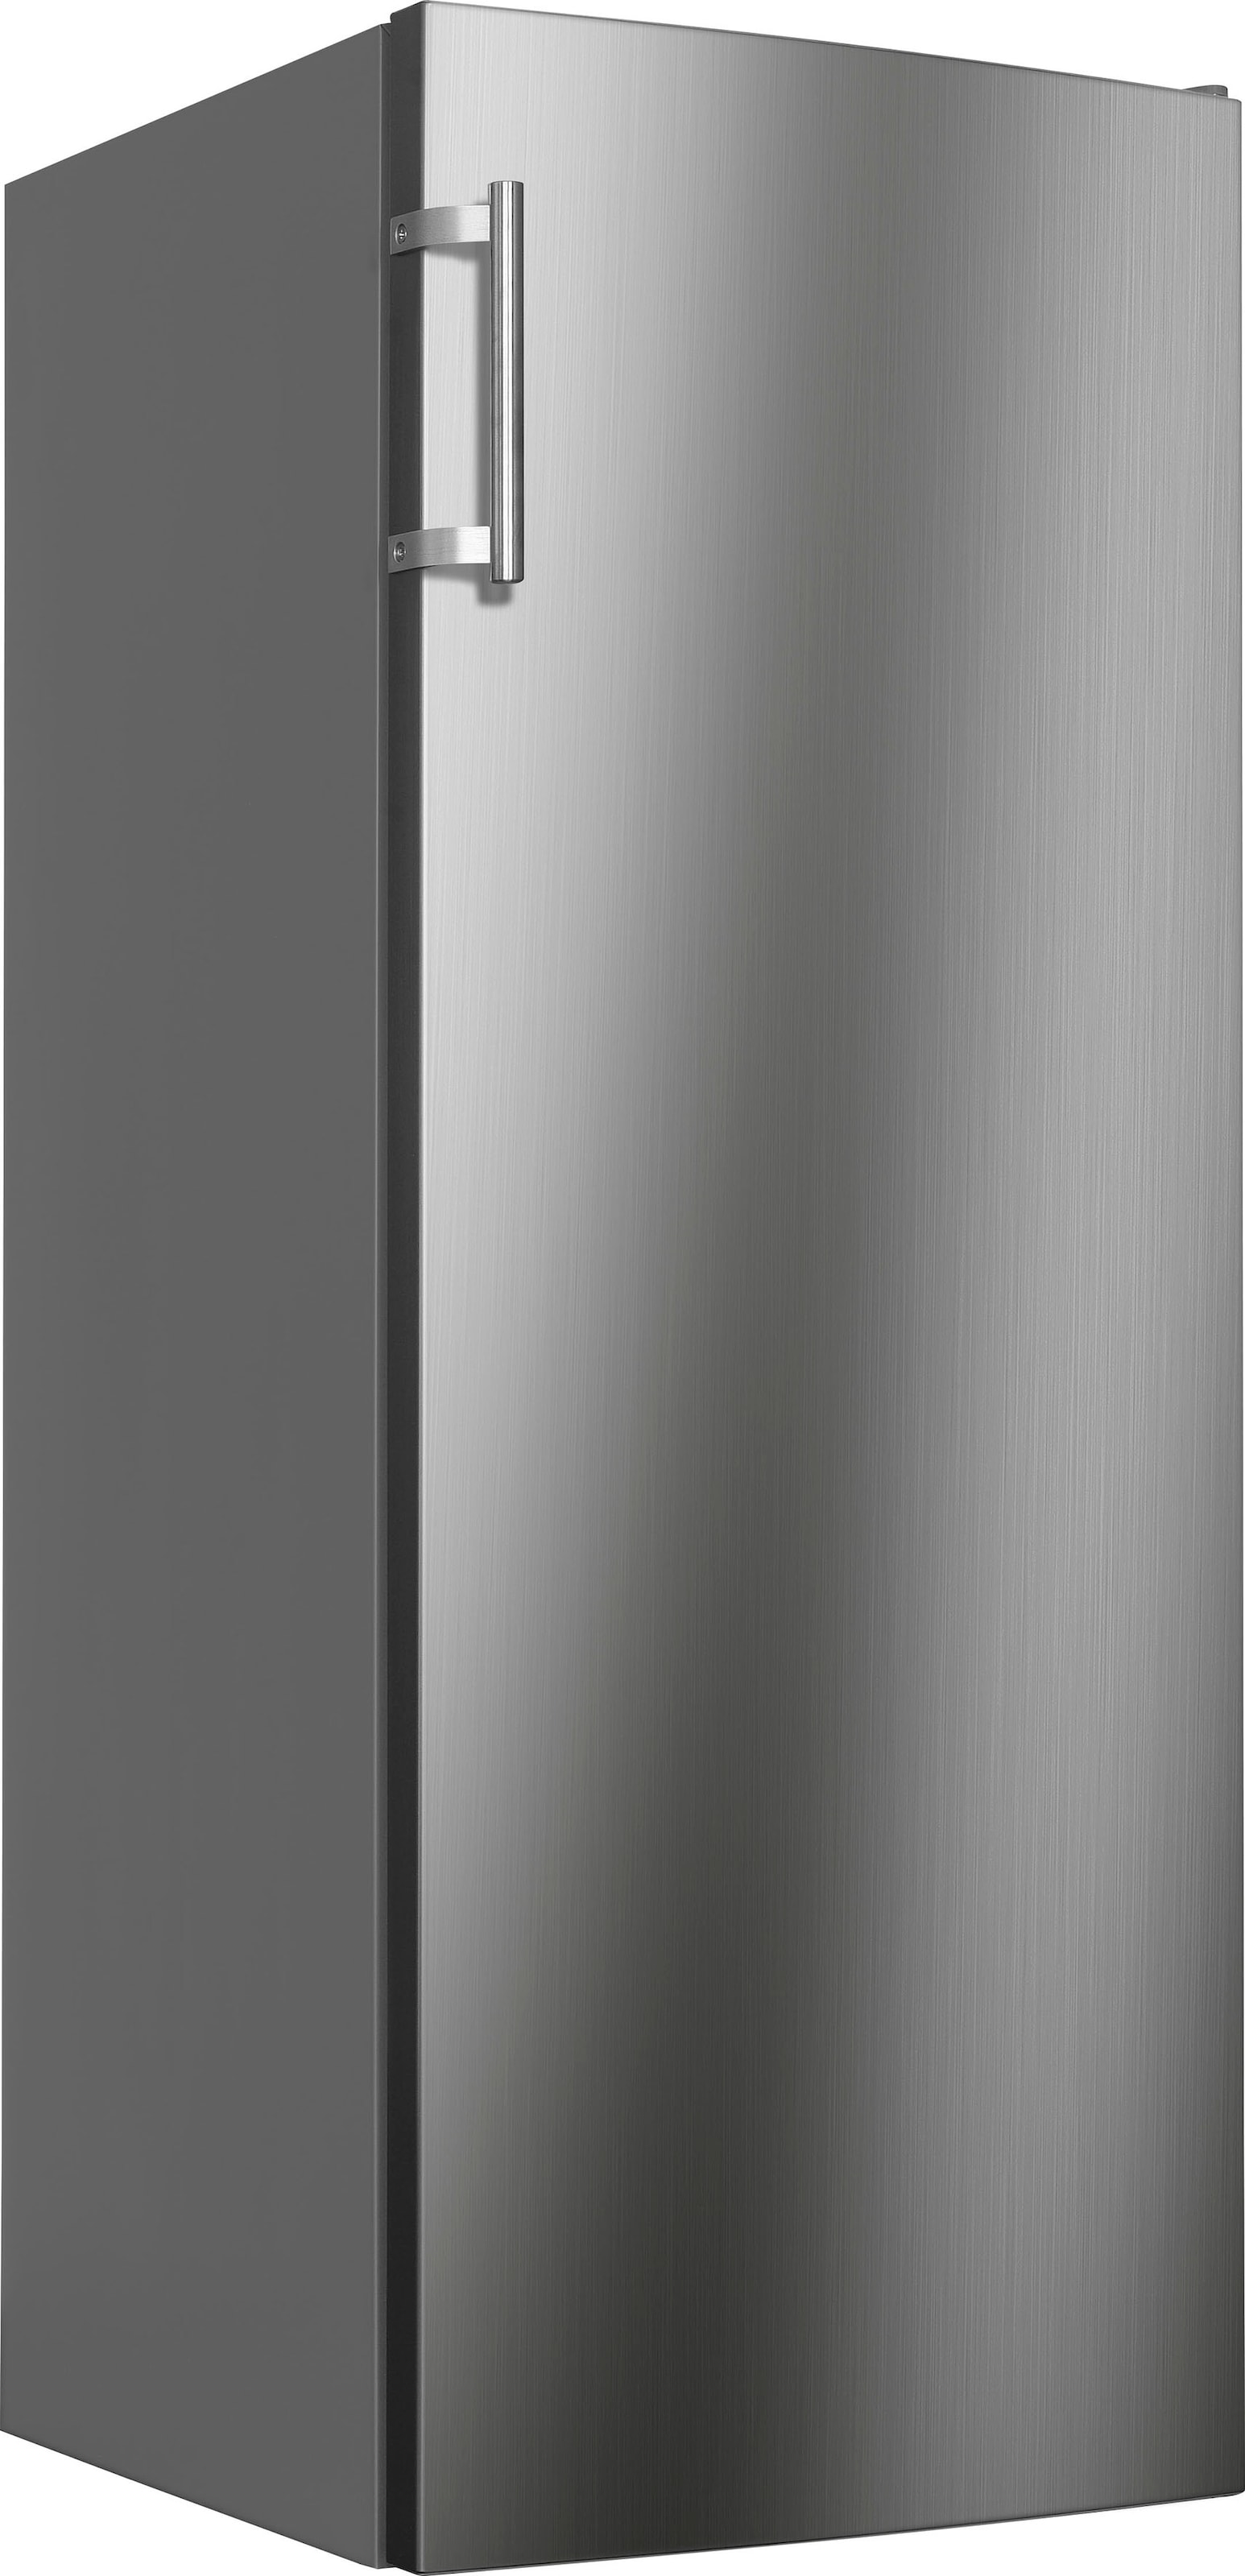 Hanseatic Kühlschrank, HKS14355EI, 142,6 cm hoch, 54,4 online breit bei cm